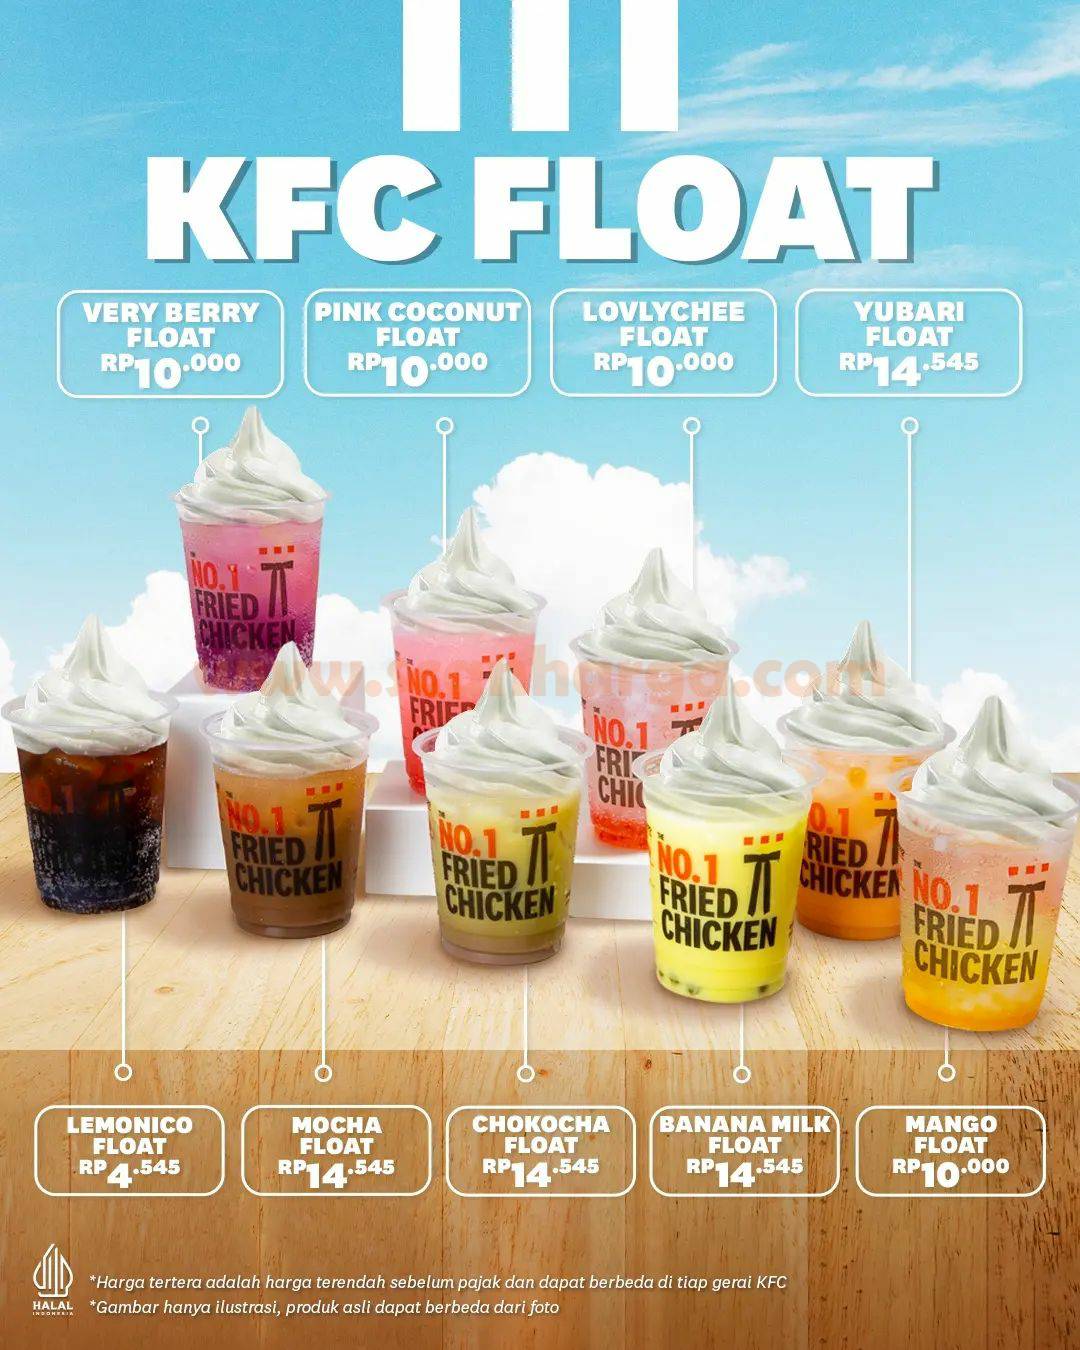 Promo KFC FLOAT – Harga mulai Rp. 4.545